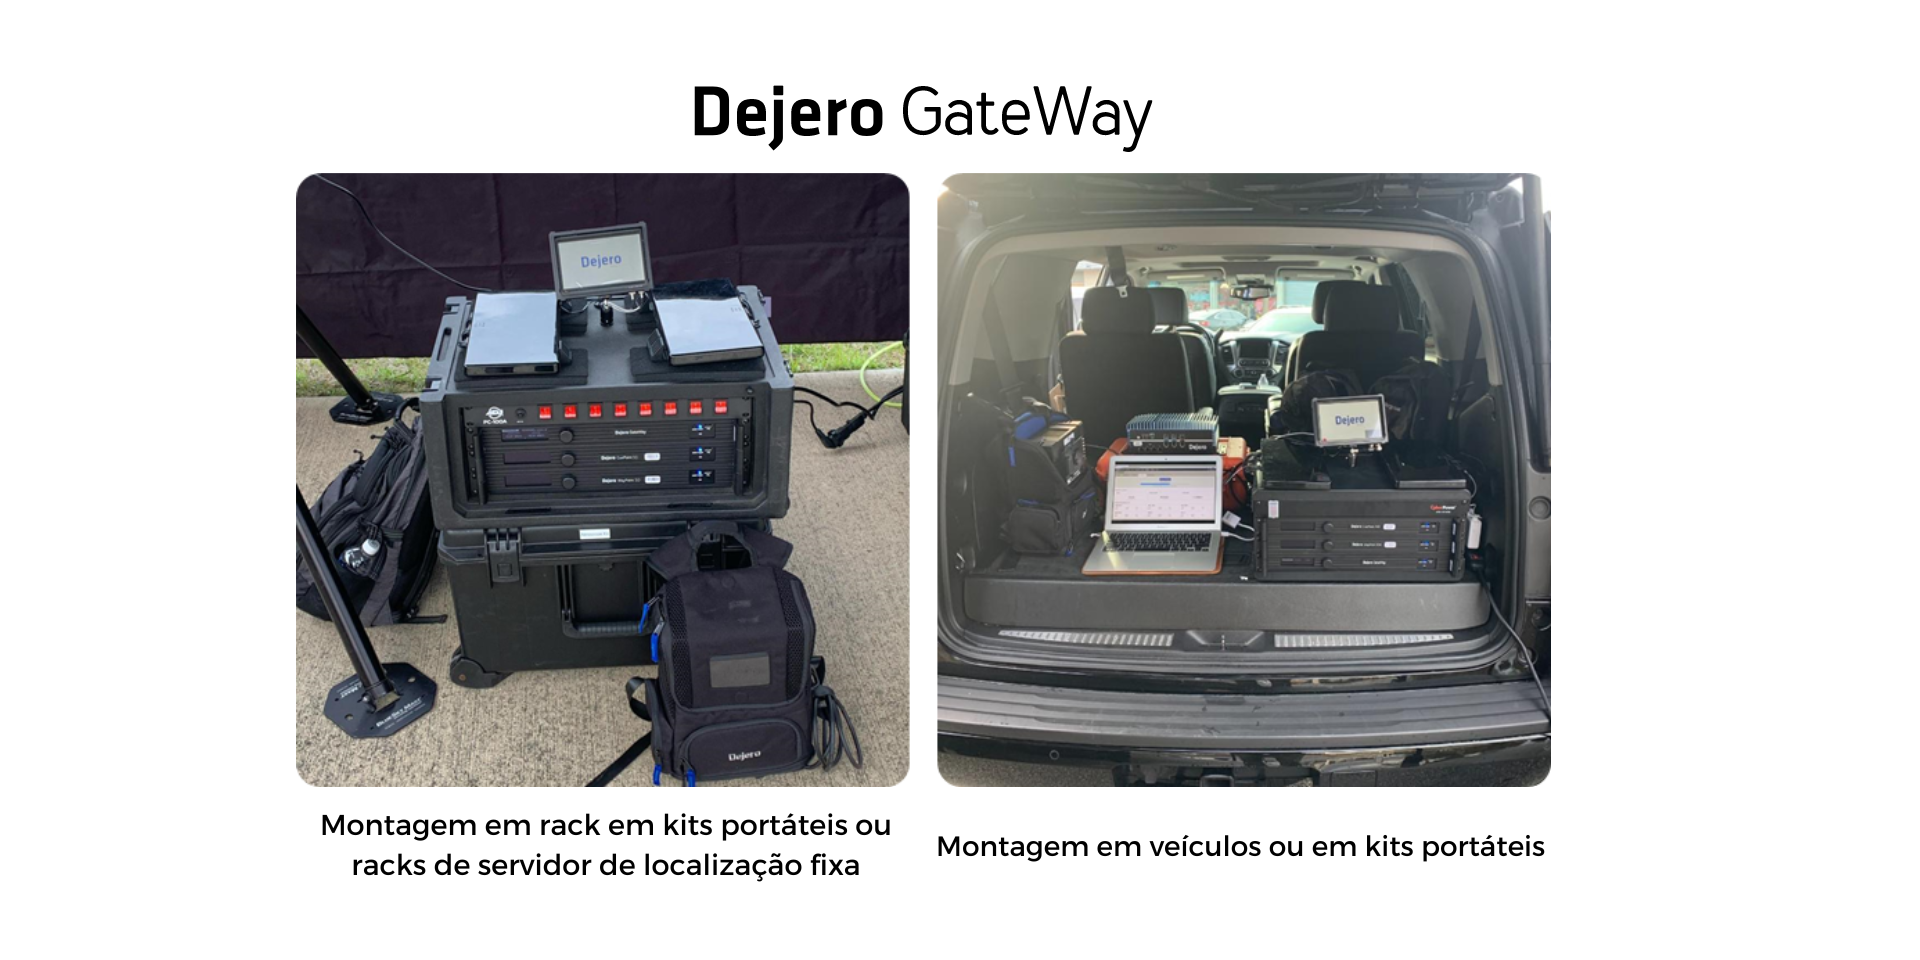 Dejero GateWay em veículo/ kits portáteis ou localização fixa